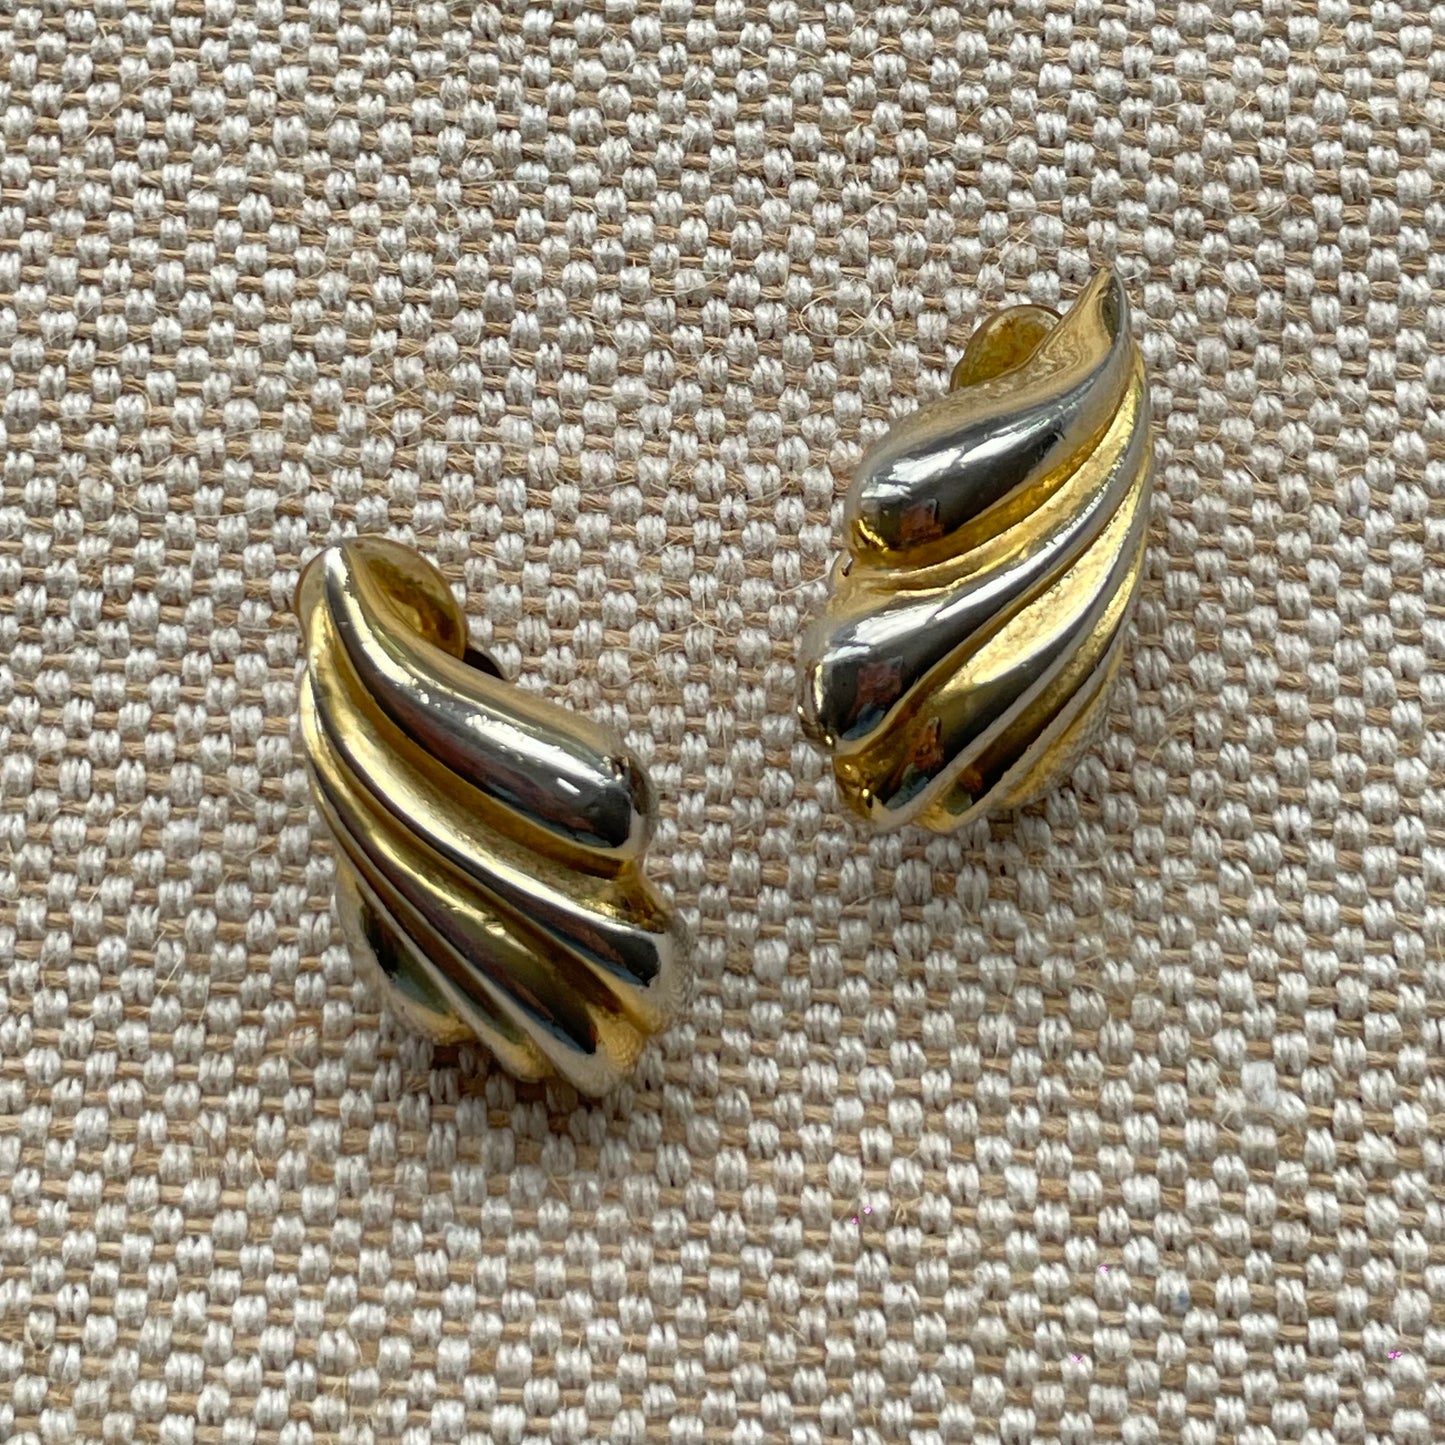 Vintage 80s Gold Swirl Motif Clip-on Earrings